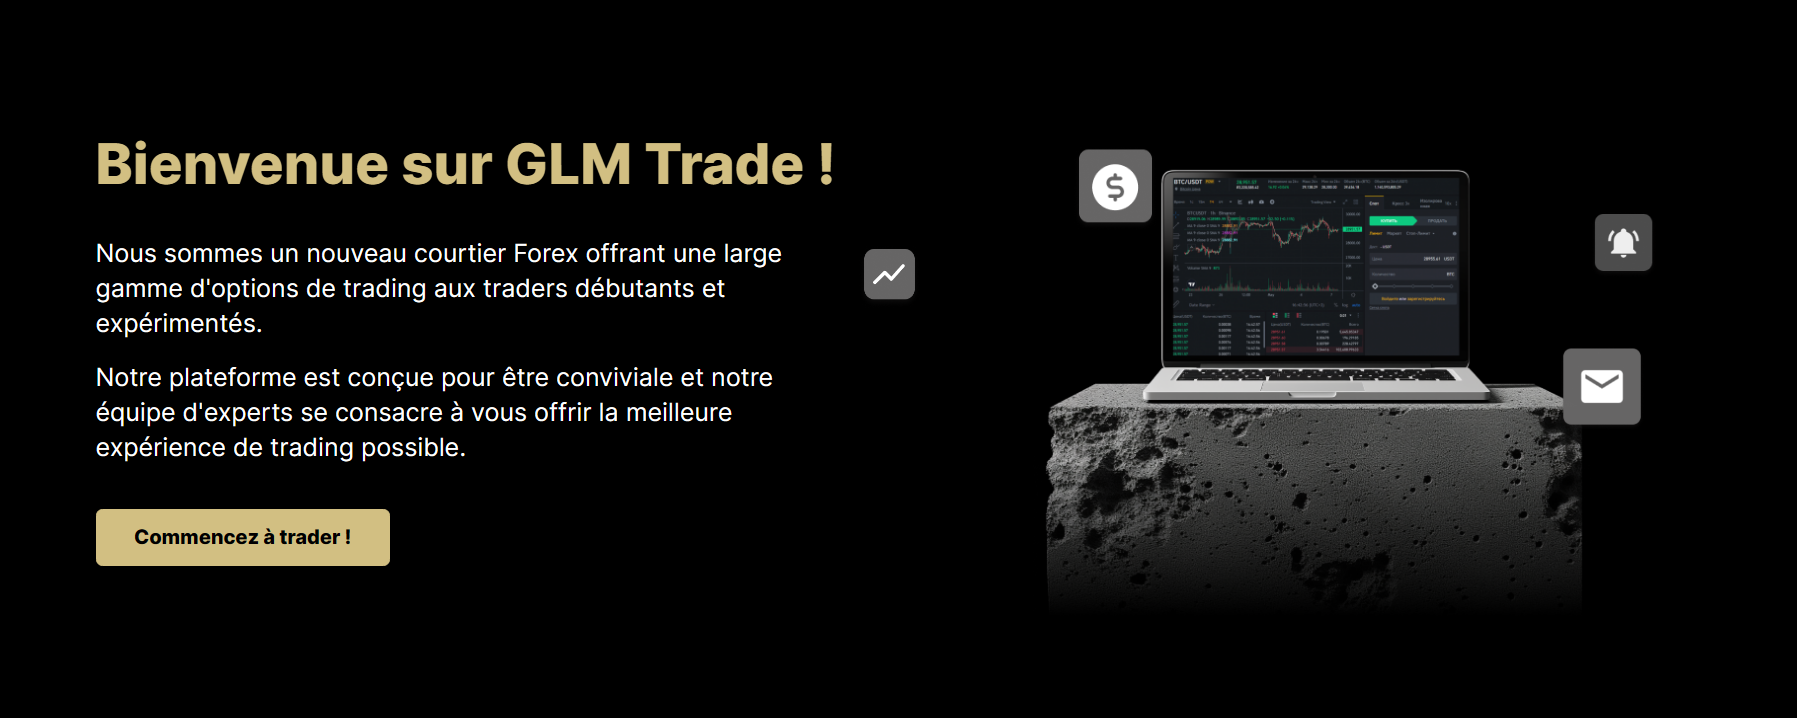 Graphique de trading sophistiqué utilisé par GLM Trade pour illustrer sa fausse technologie